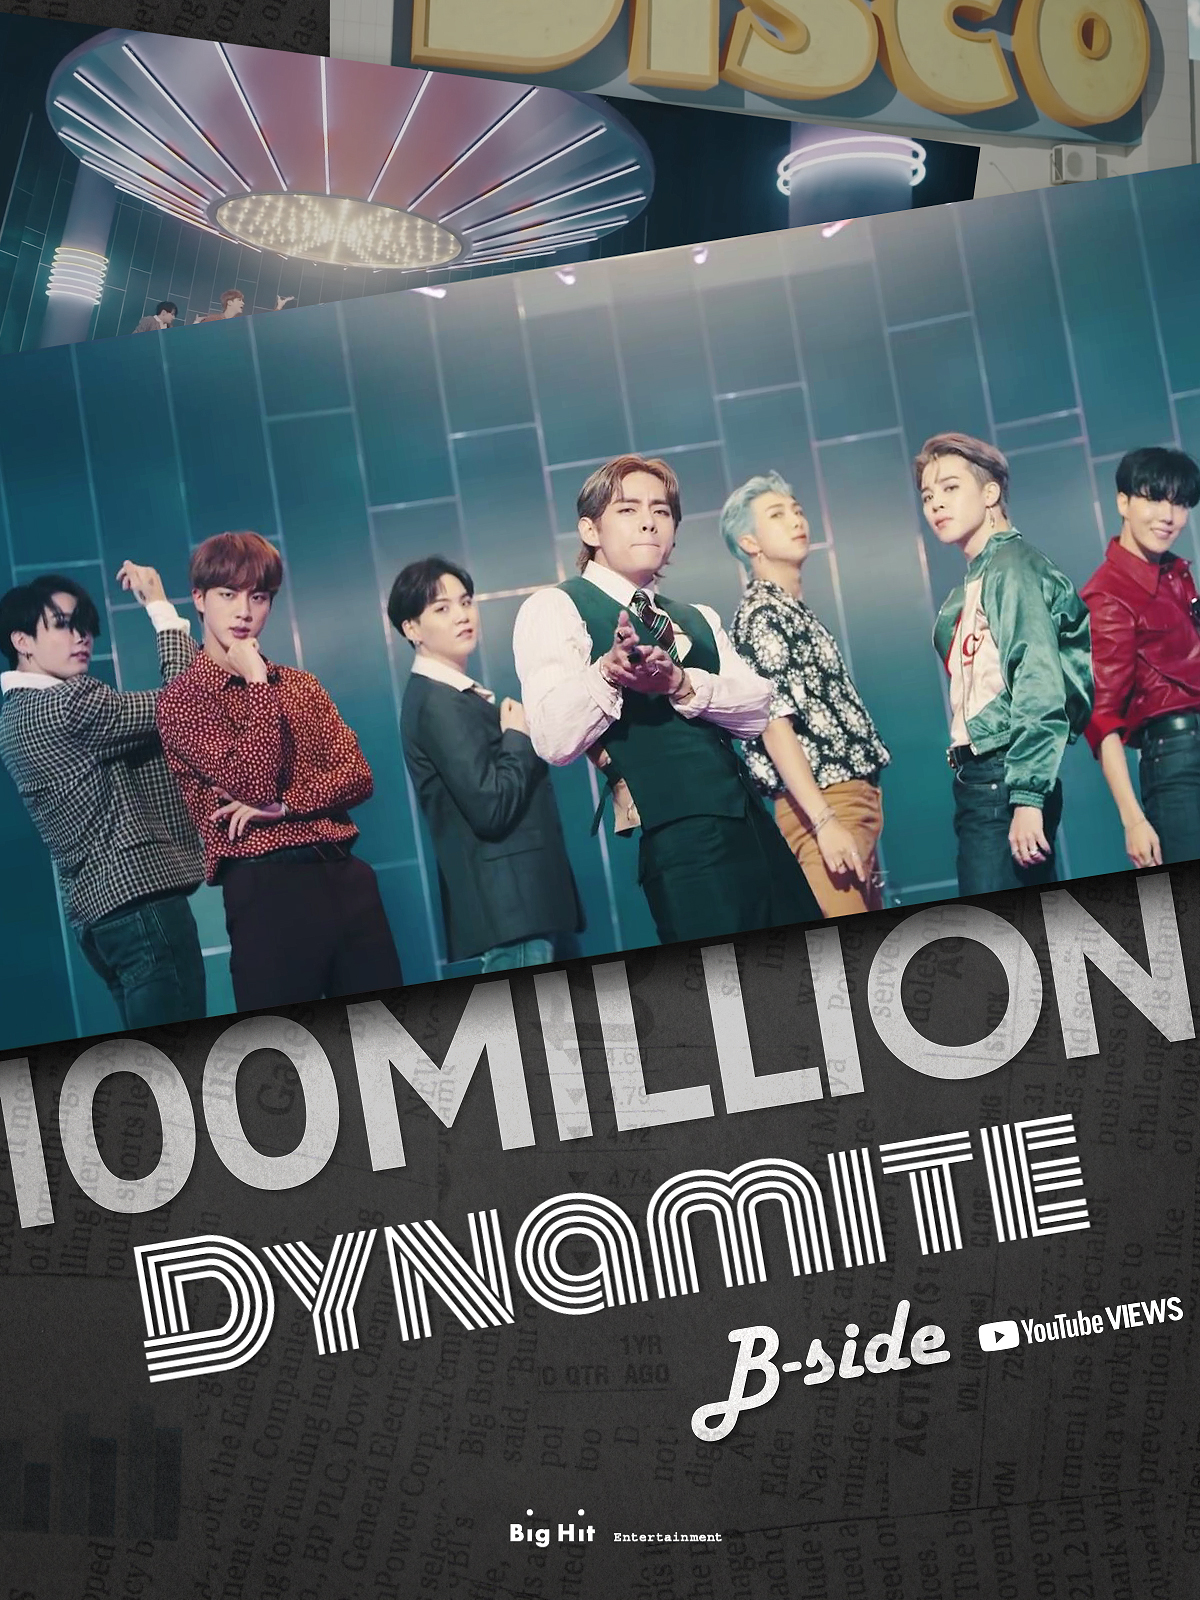 방탄소년단_Dynamite B-side MV_1억뷰 이미지. 2020.11.24. (사진 = 빅히트 엔터테인먼트 제공)